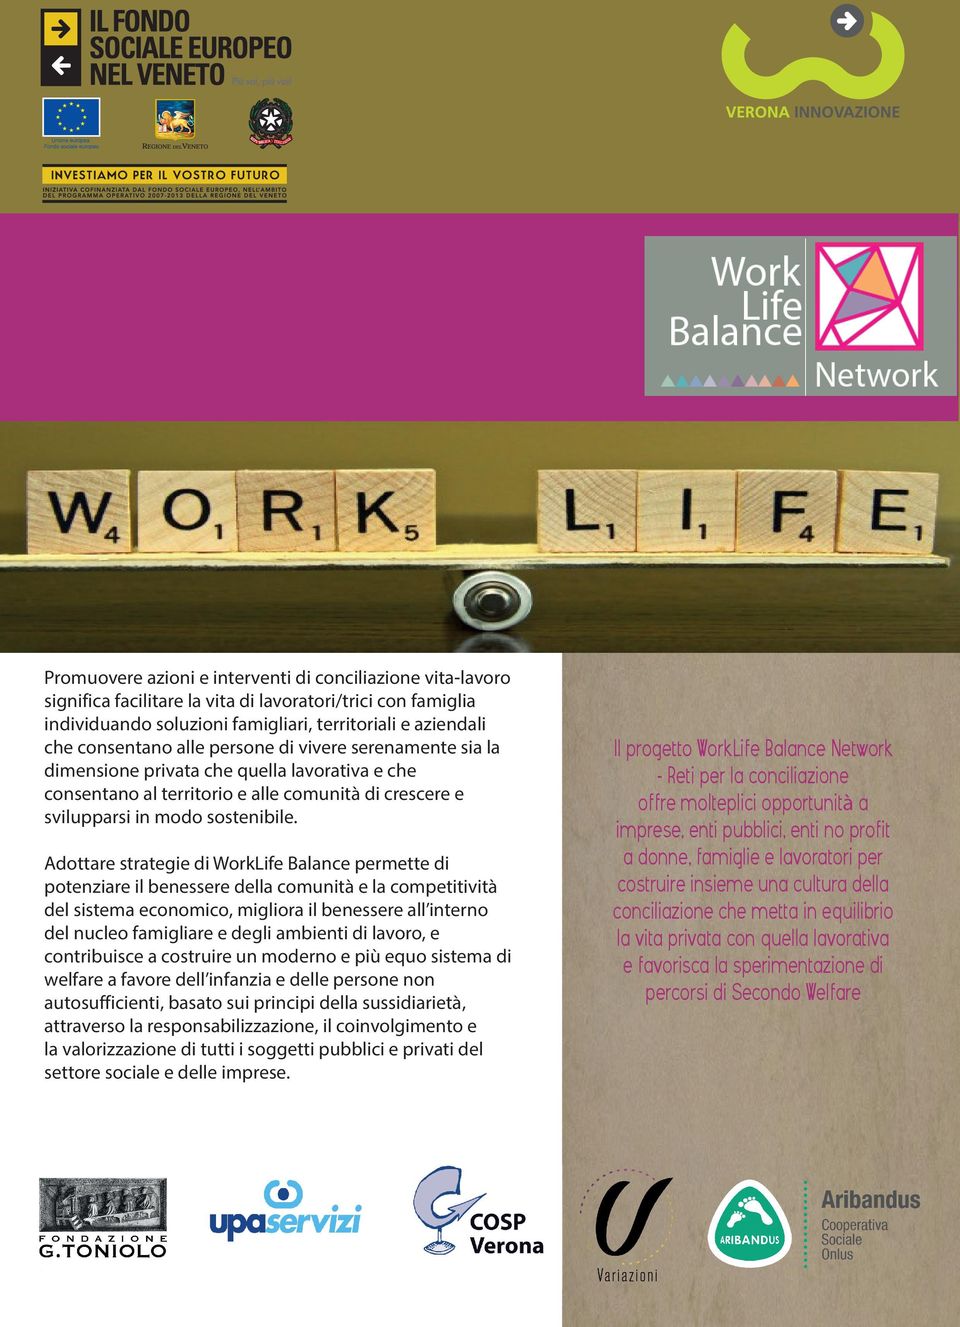 Adottare strategie di WorkLife Balance permette di potenziare il benessere della comunità e la competitività del sistema economico, migliora il benessere all interno del nucleo famigliare e degli